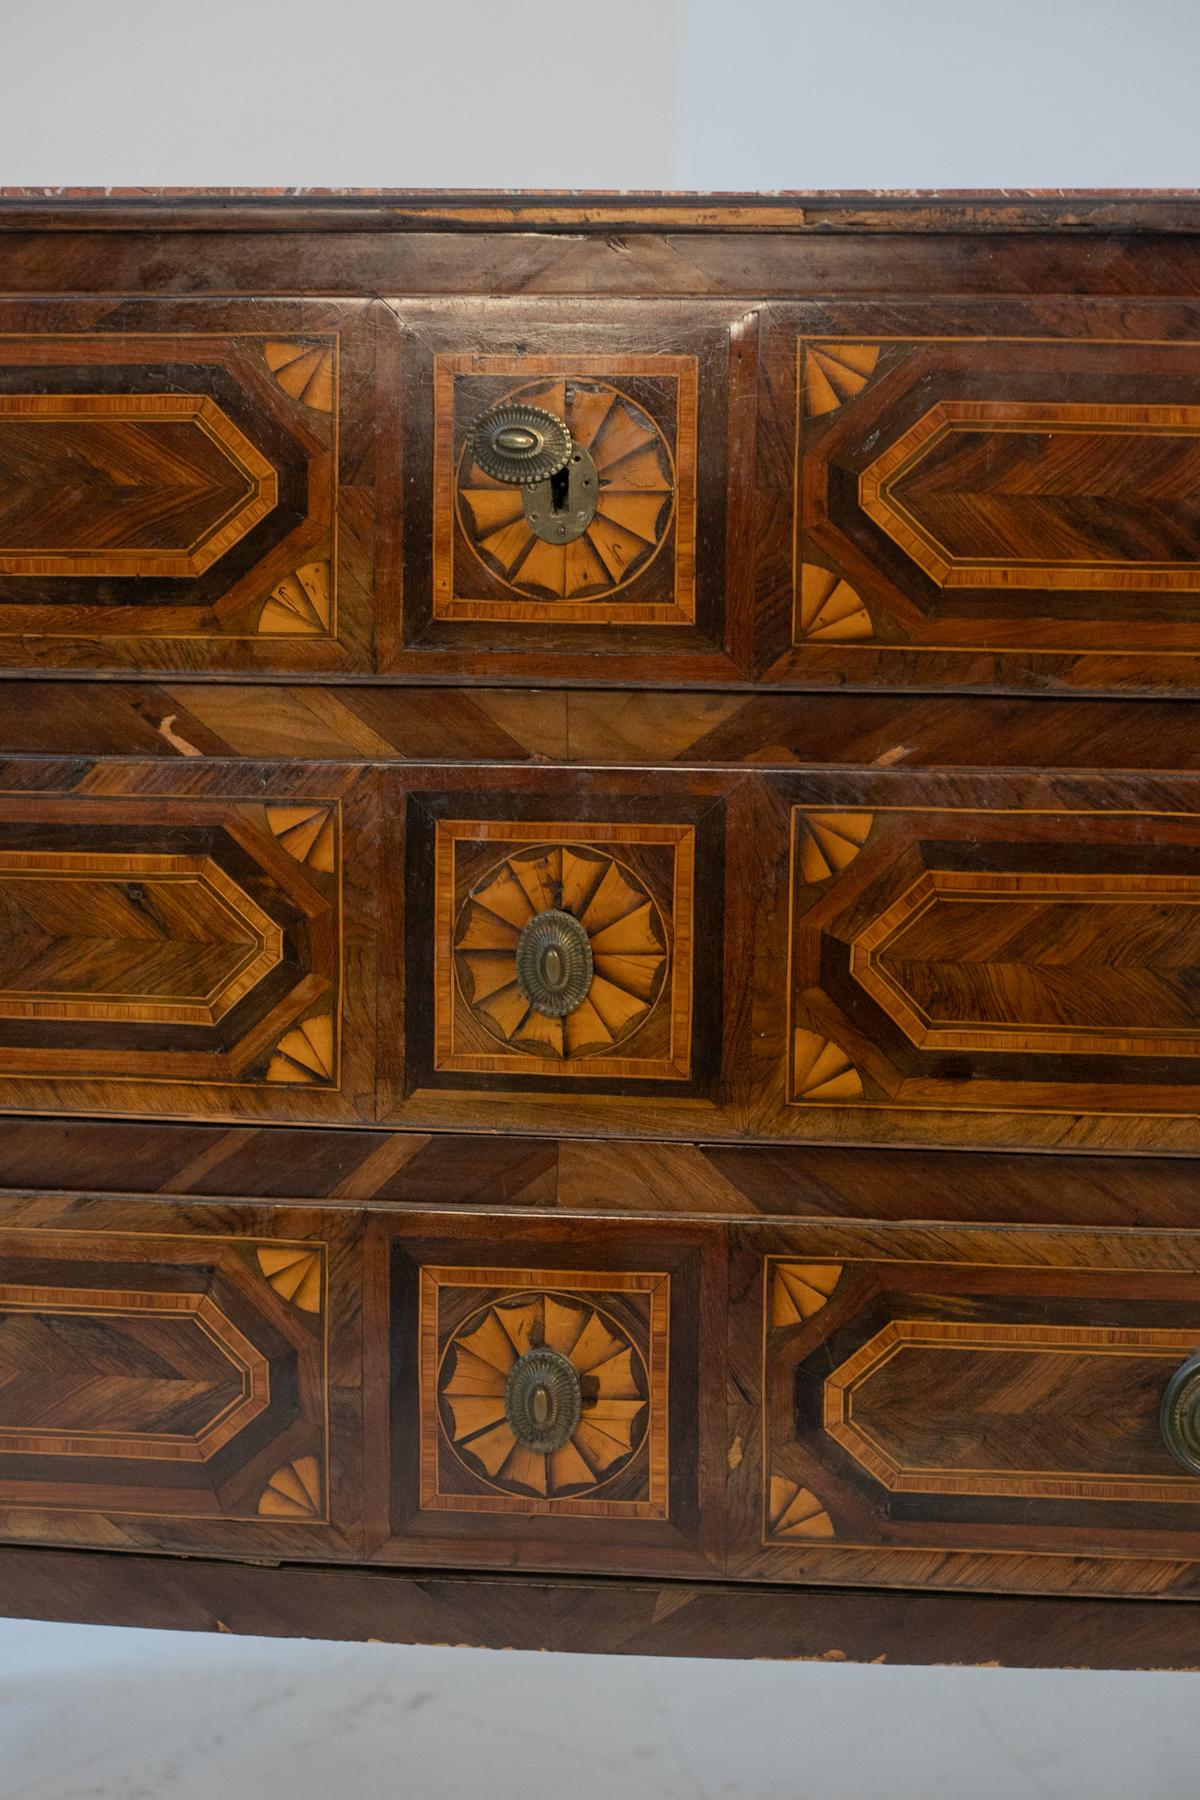 Belle commode ancienne datant du 18ème siècle de fabrication française en bois.
La commode a une forme rectangulaire très dure et classique, il y a 4 pieds de support en bois poinçonnés, très élégants. Le plateau est entièrement constitué d'un très